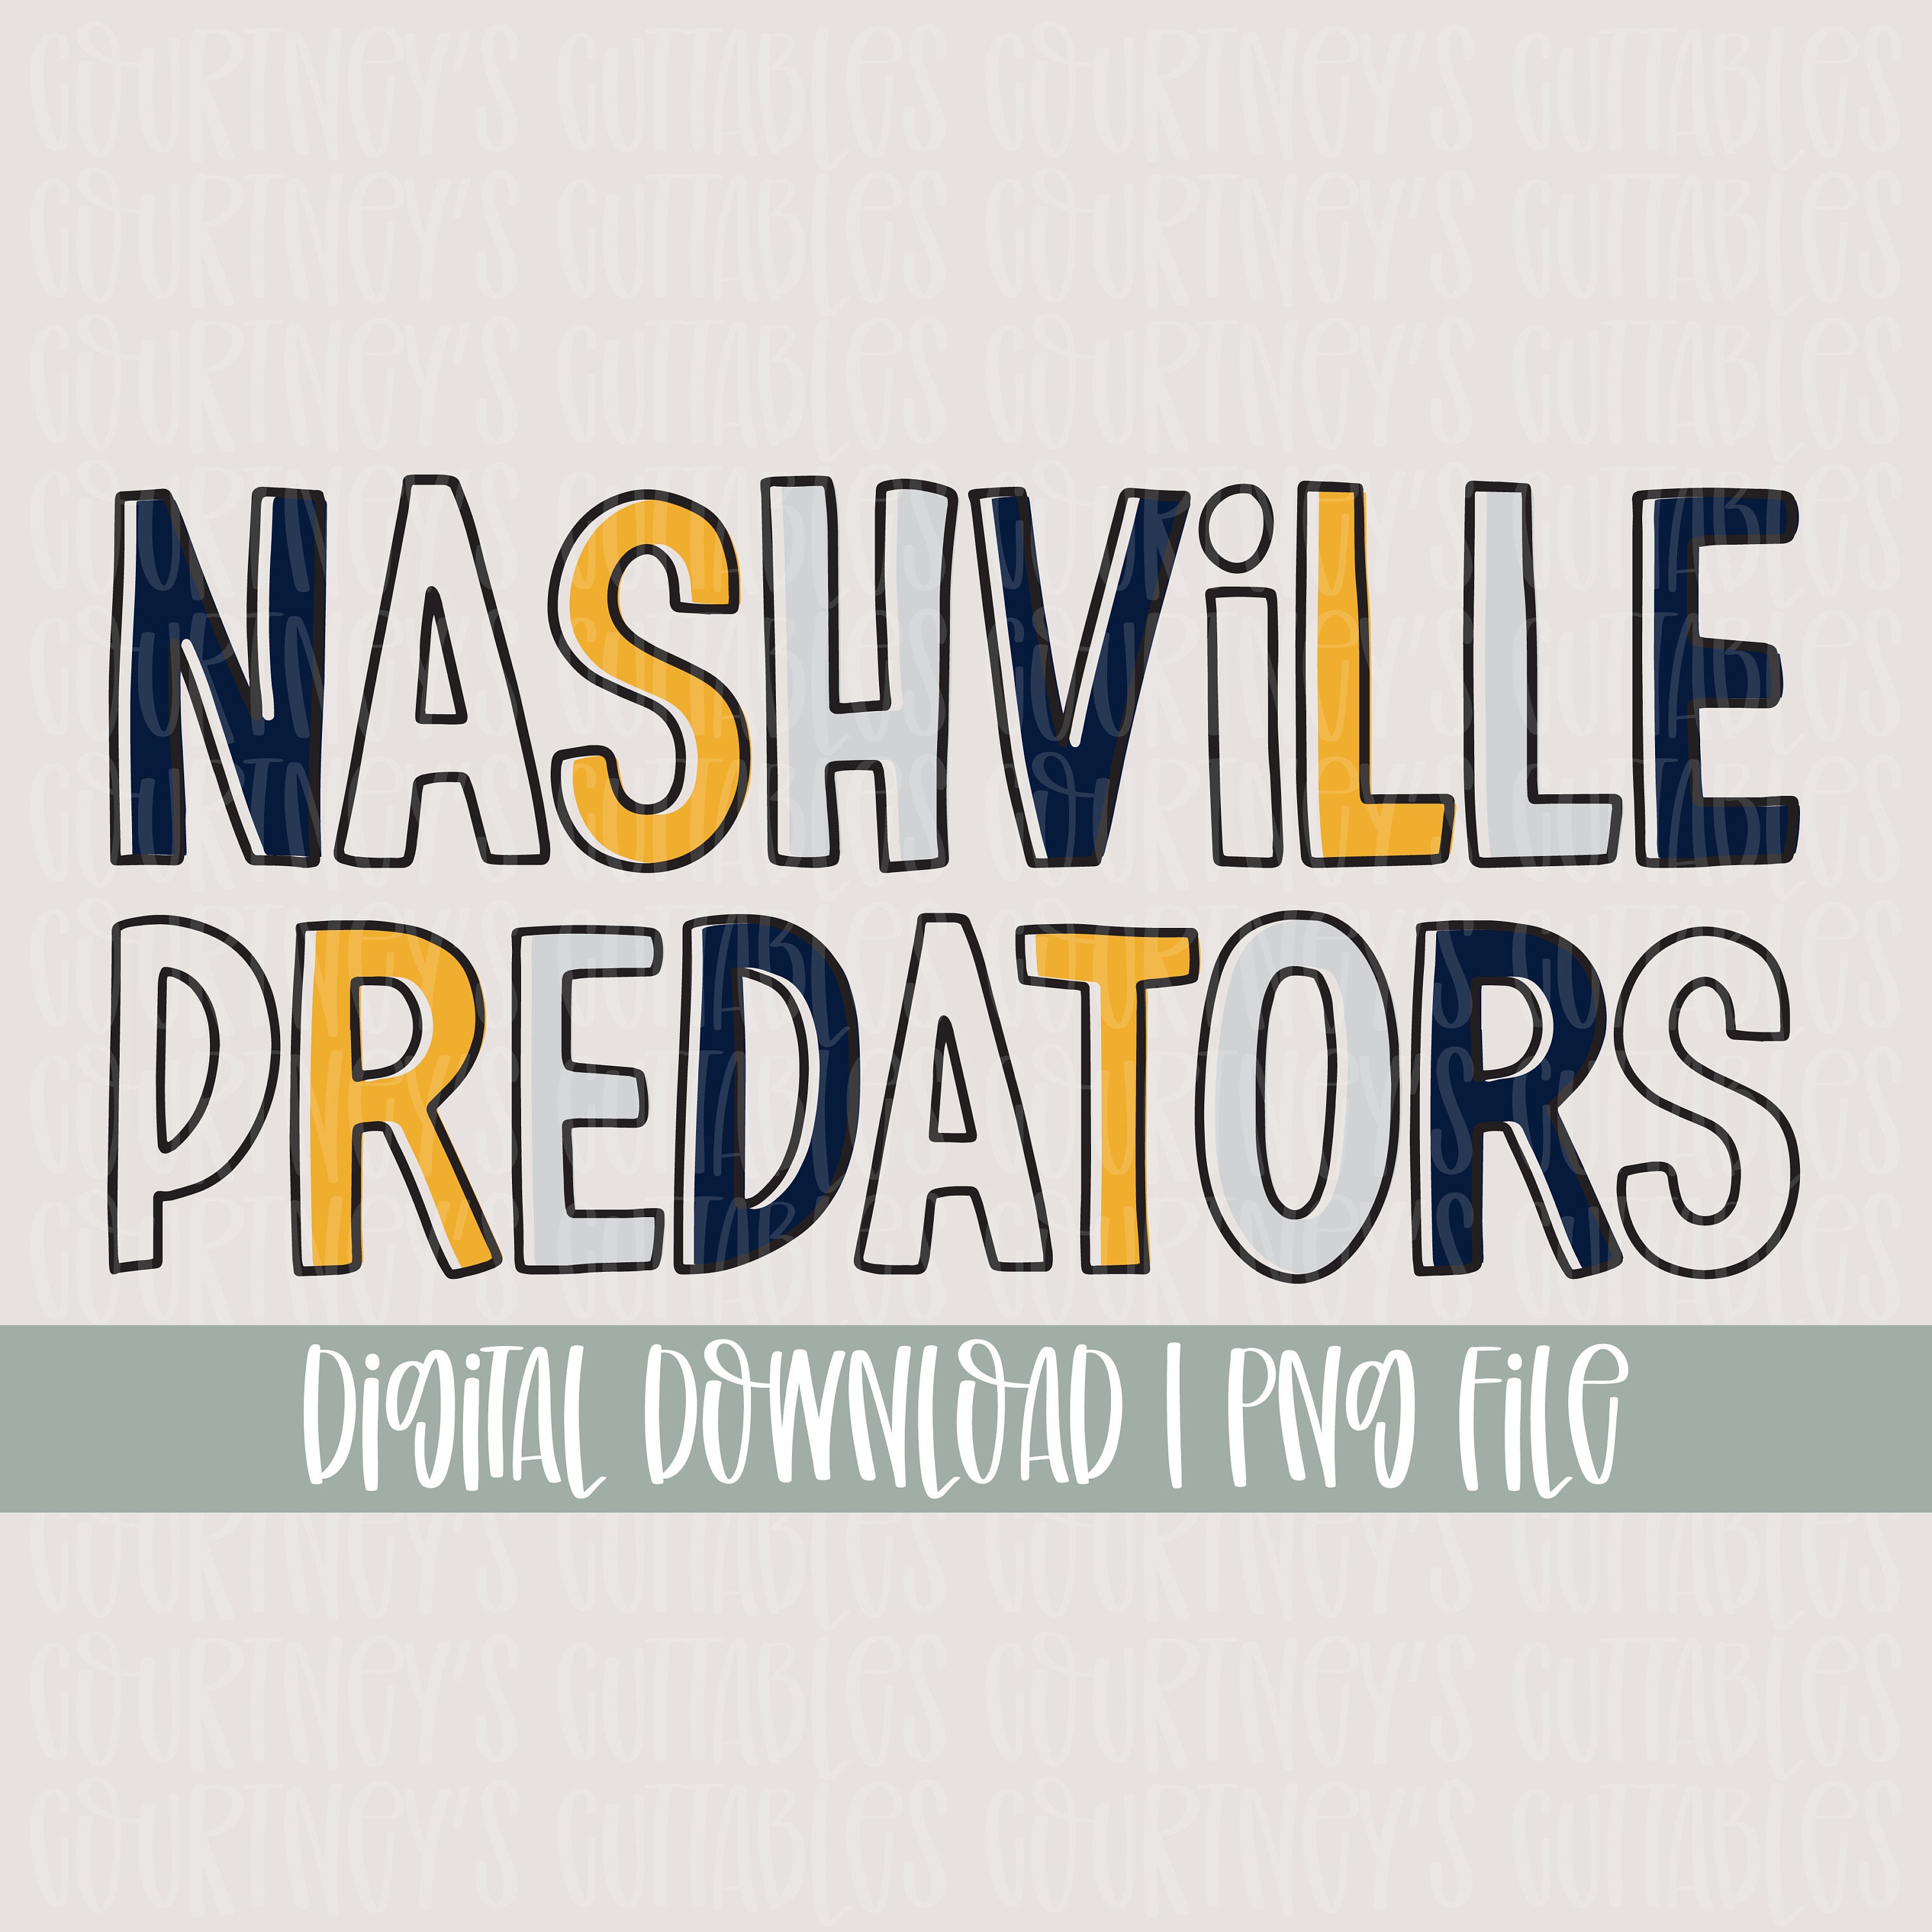 Nashville Predators Logo PNG Transparent & SVG Vector - Freebie Supply